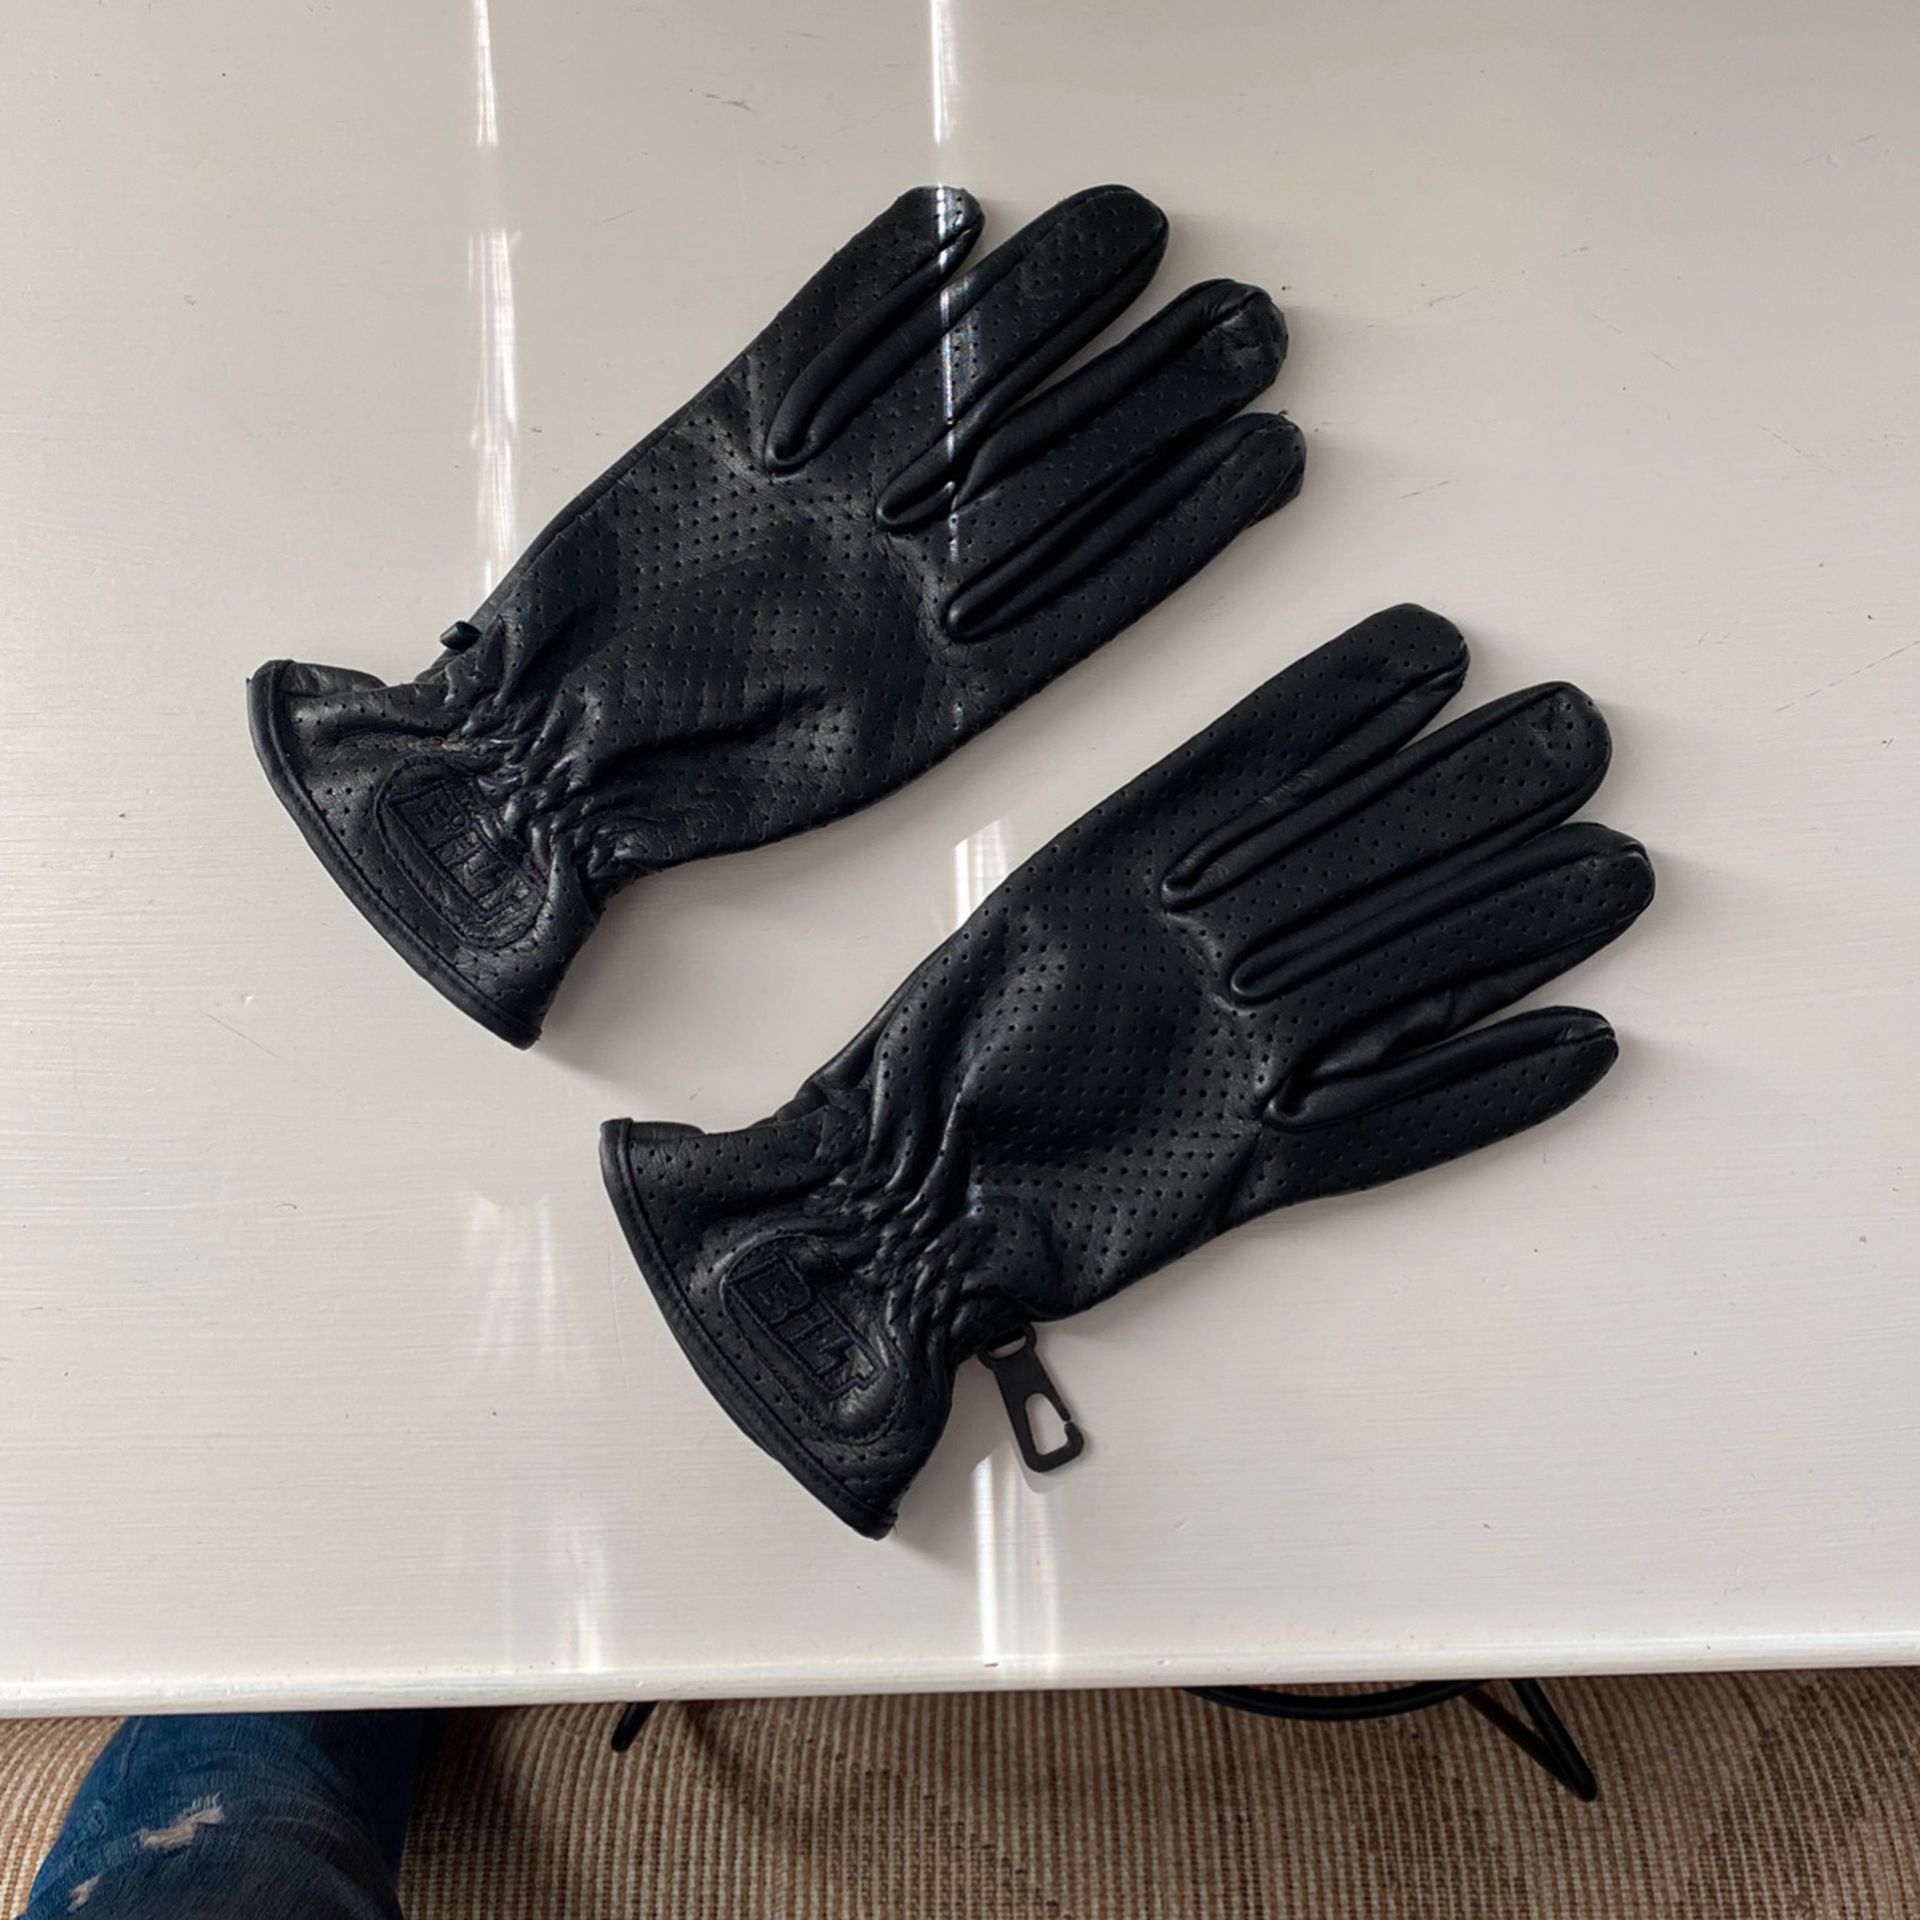 Bilt Leather Riding Gloves